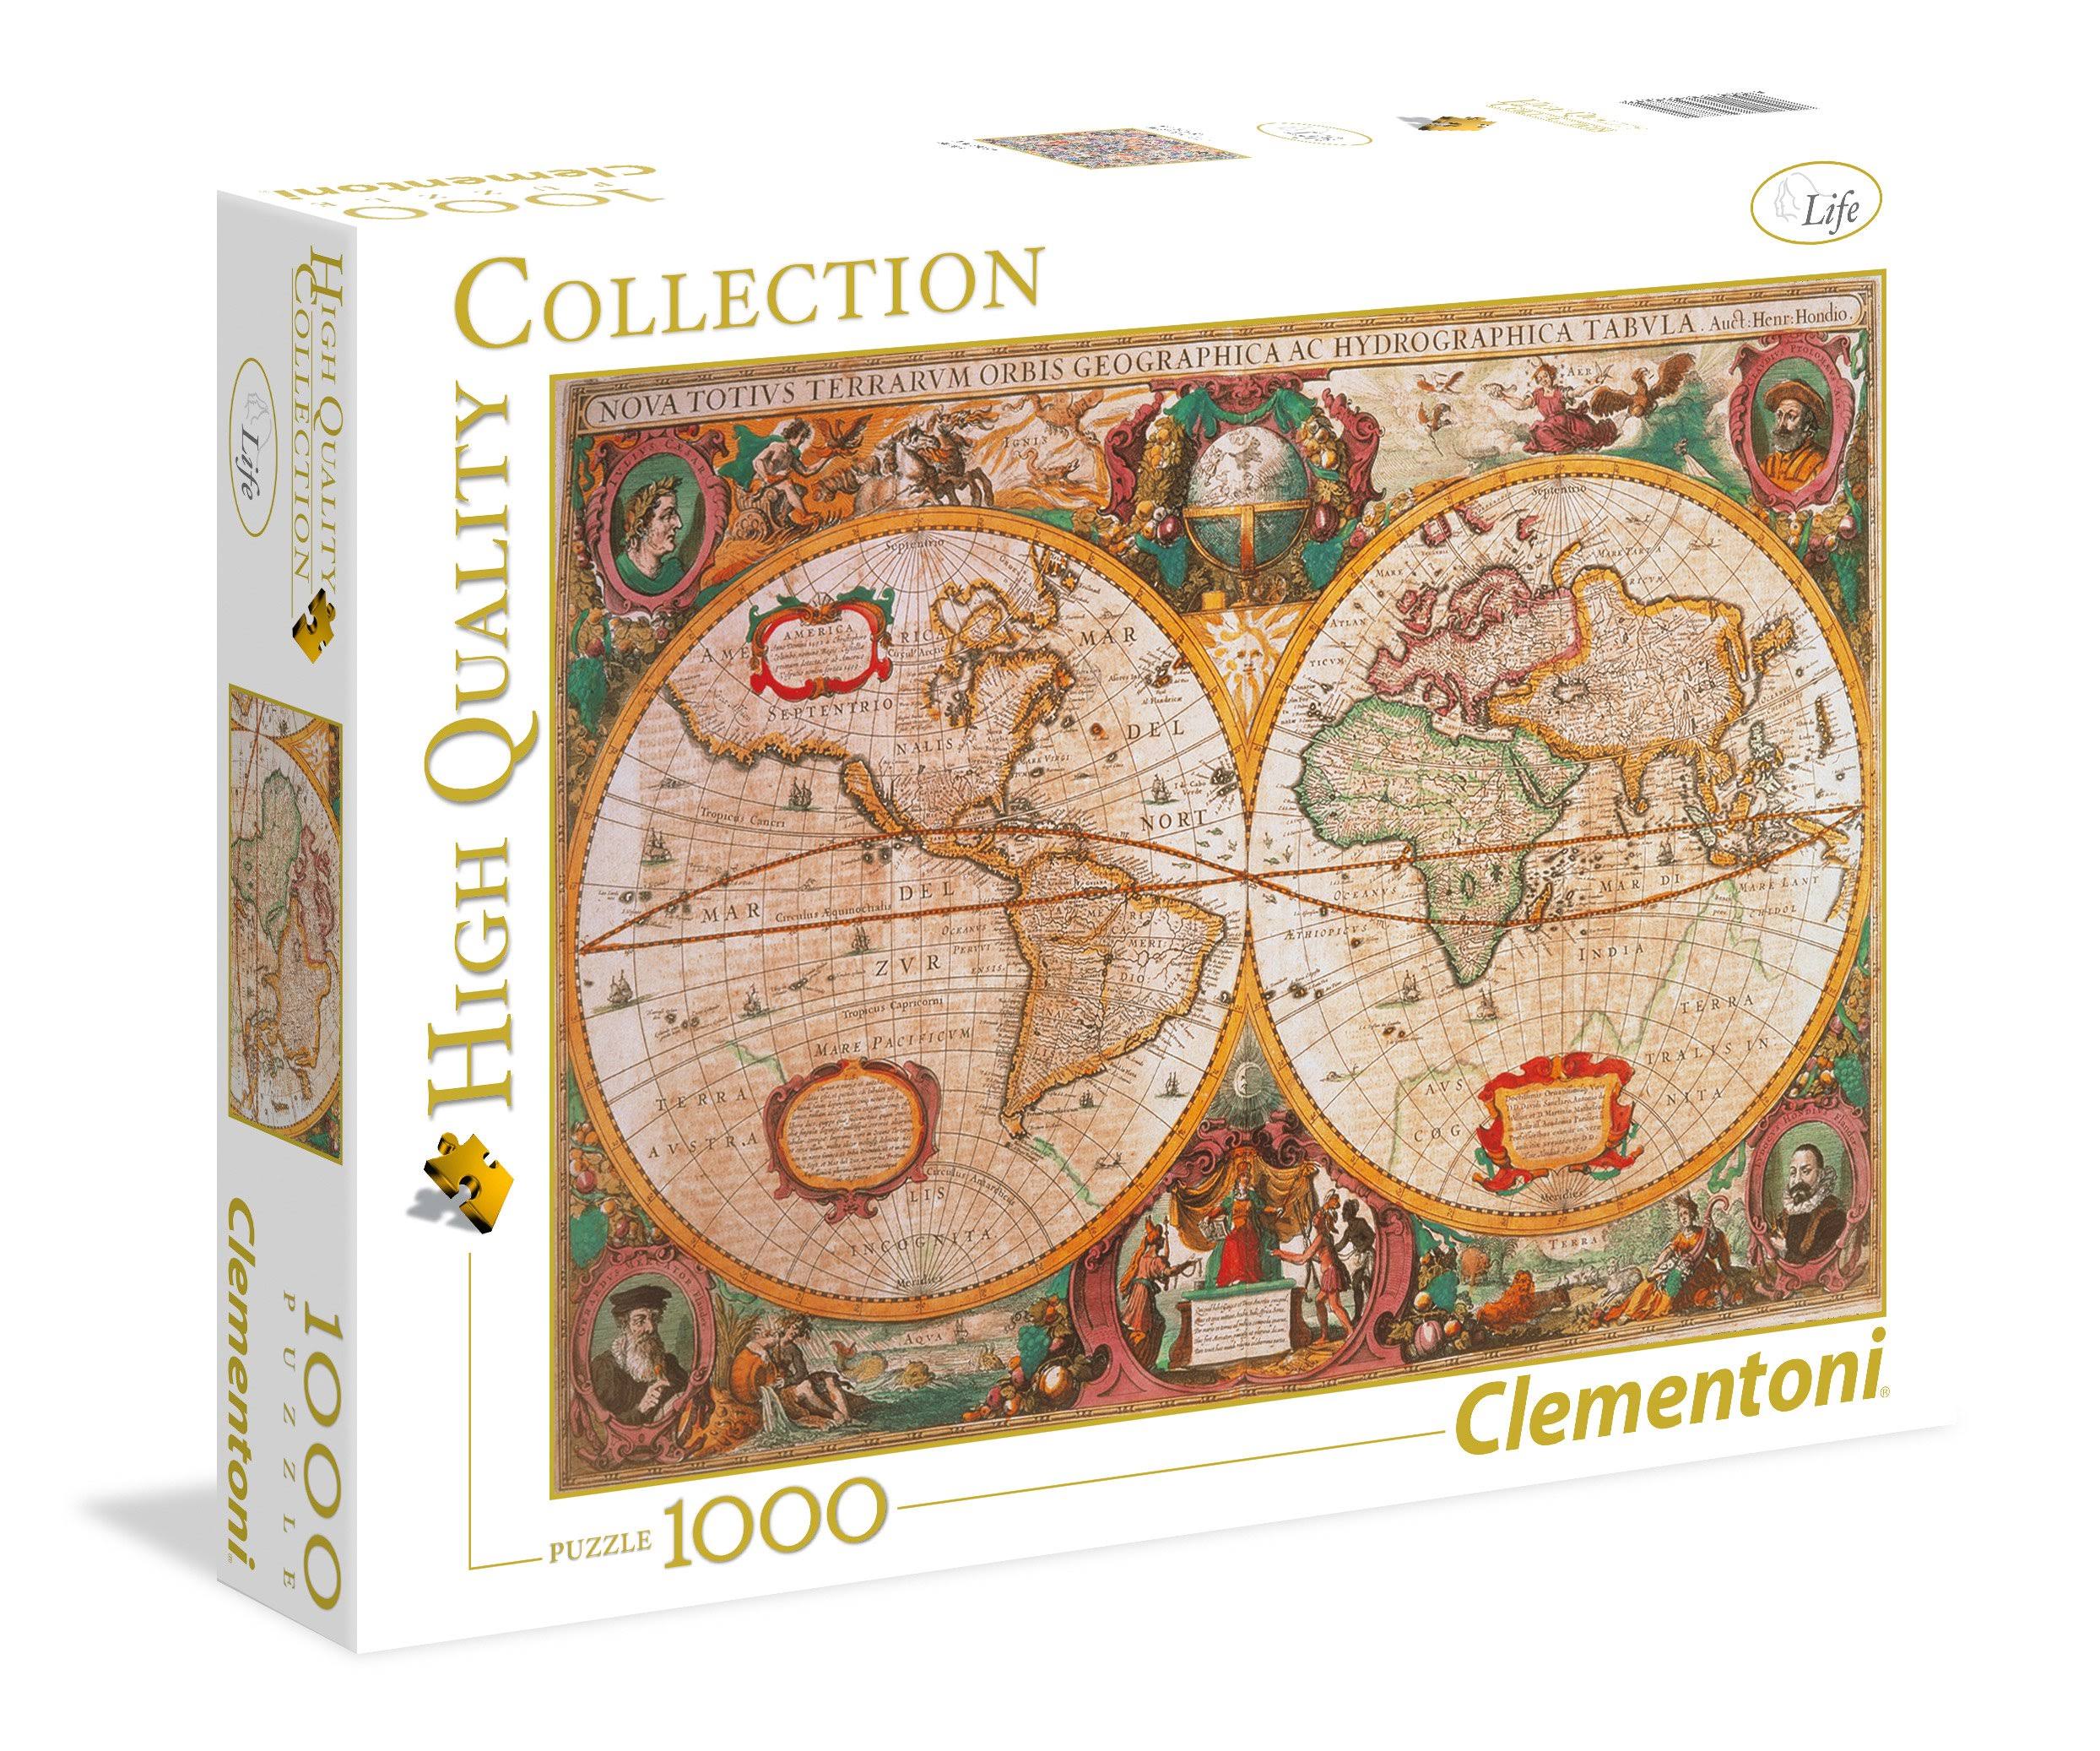 Clementoni Ancient Map 1000-Piece Jigsaw Puzzle